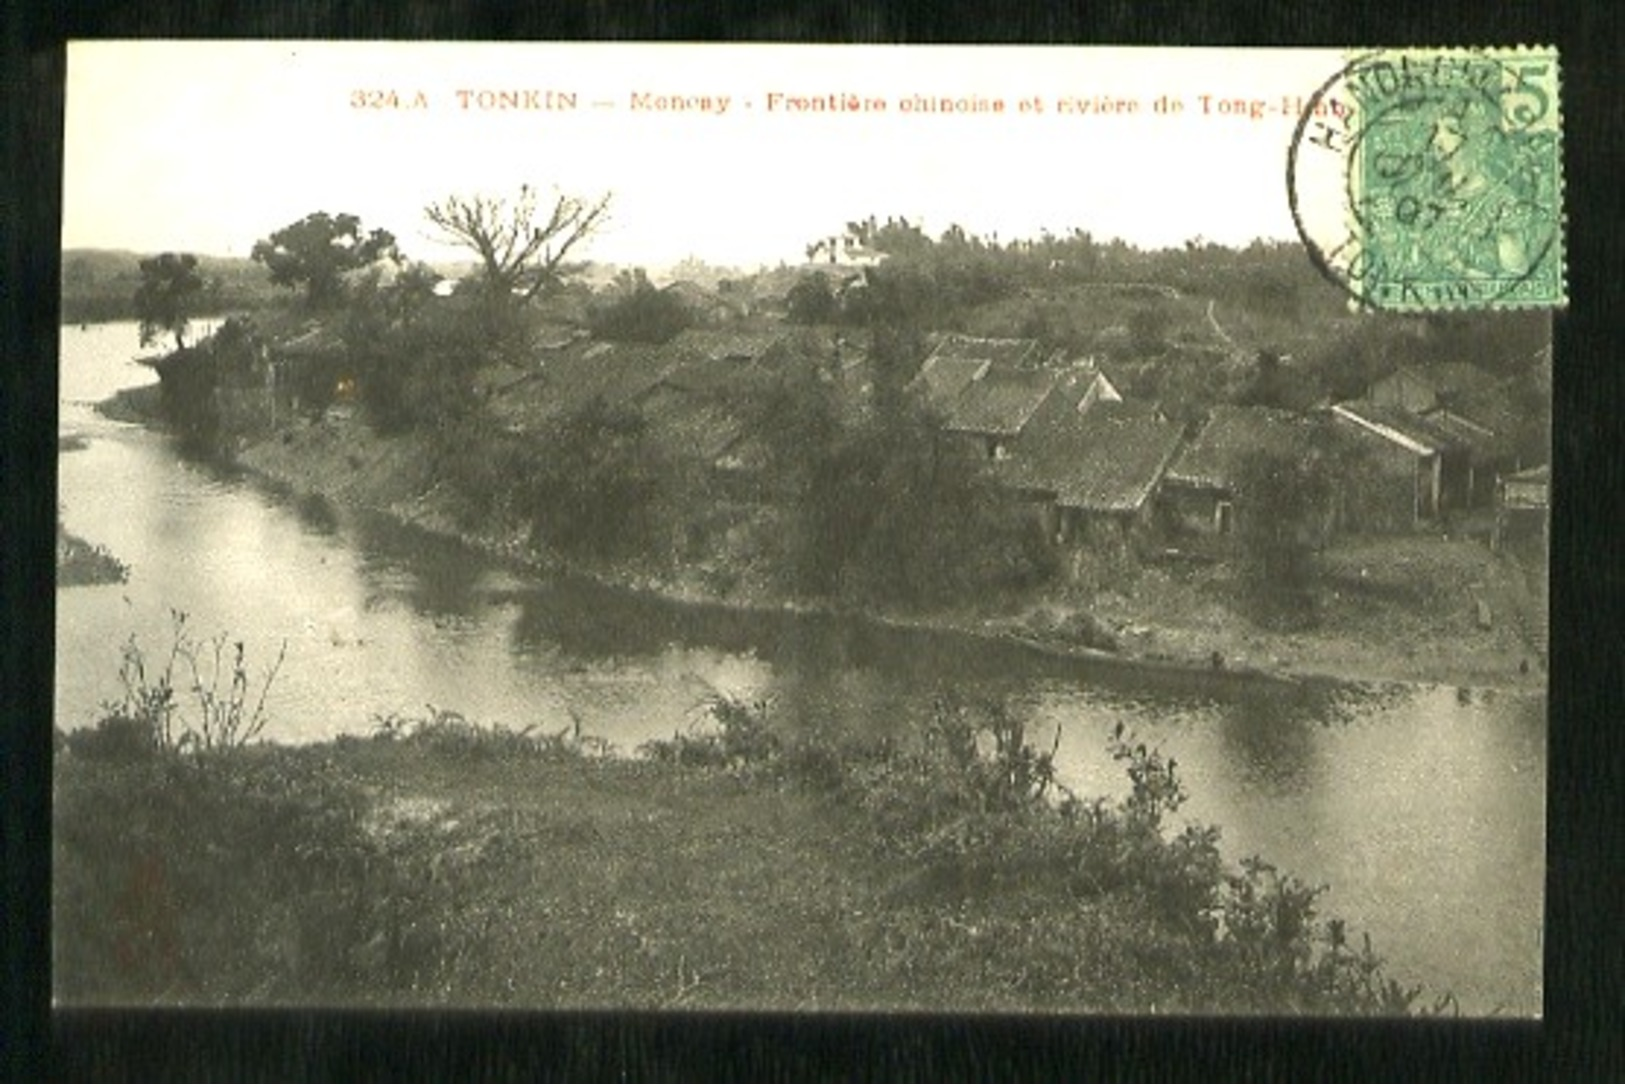 TONKIN - 324 A - MONCAY -  Frontière Chinoise Et Rivière De Tong-Hinh - Viêt-Nam